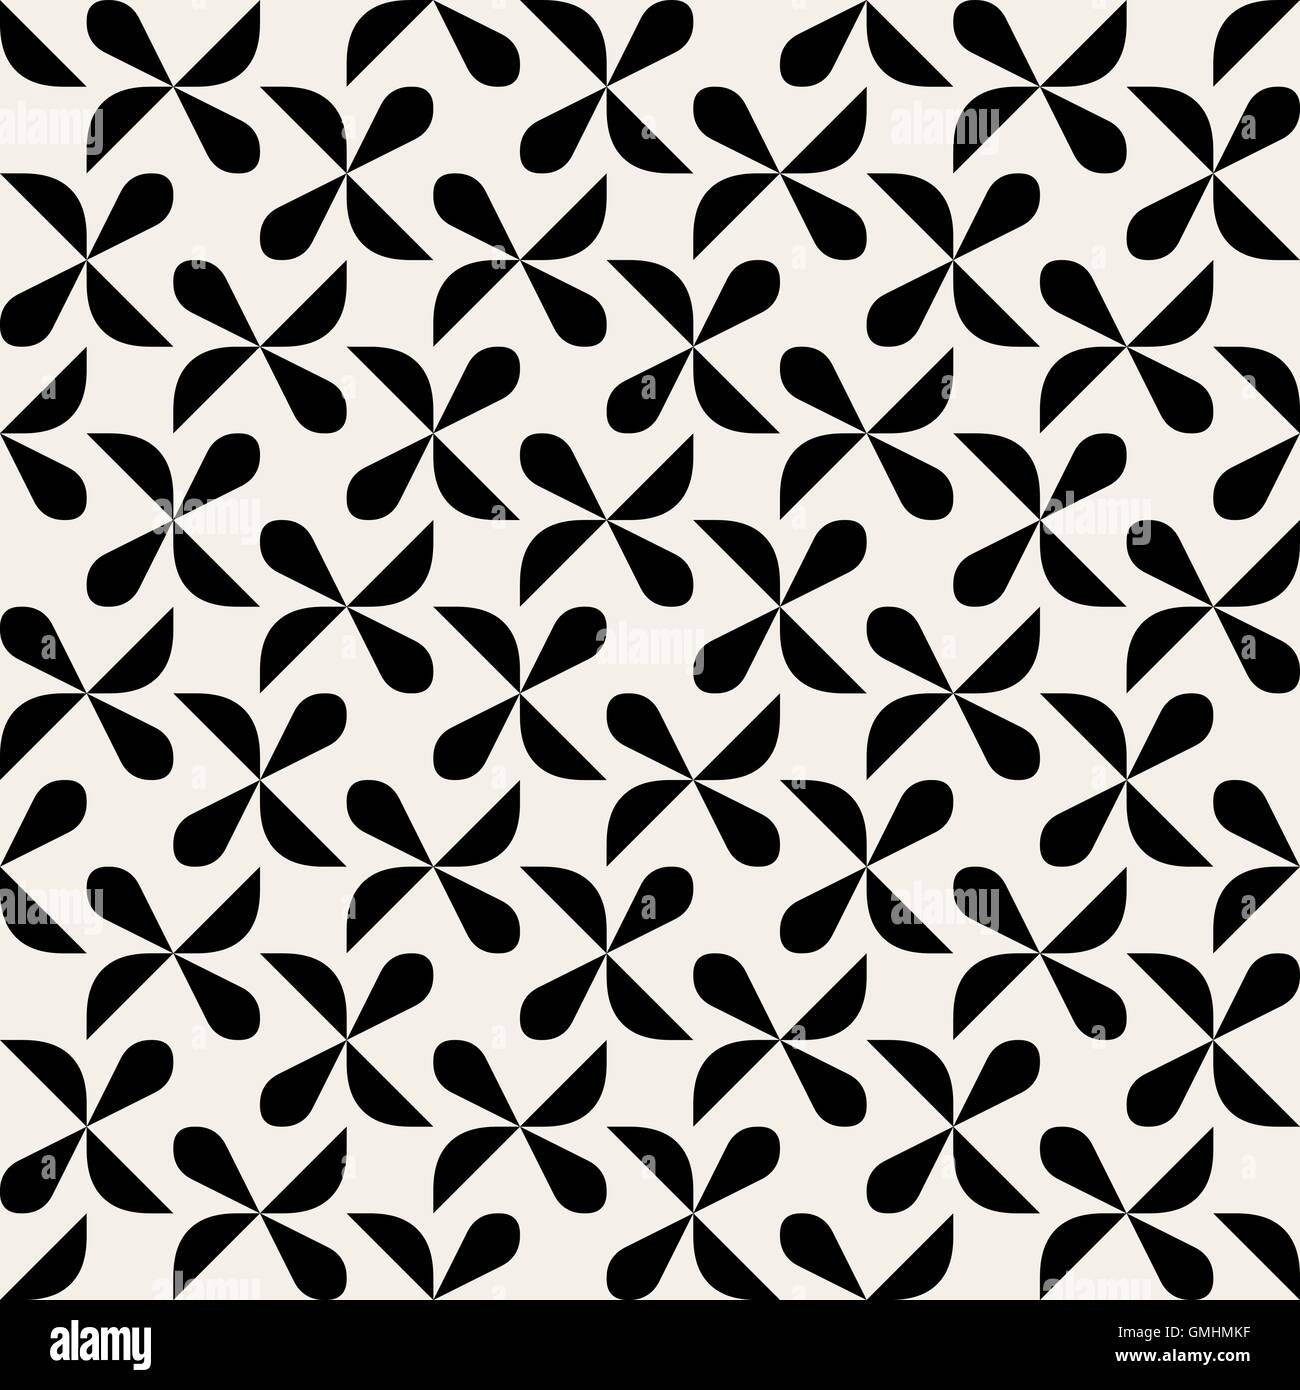 Vektor nahtlose schwarz-weiß abgerundeten Tropfen Form Halbkreis geometrisches Muster Stock Vektor